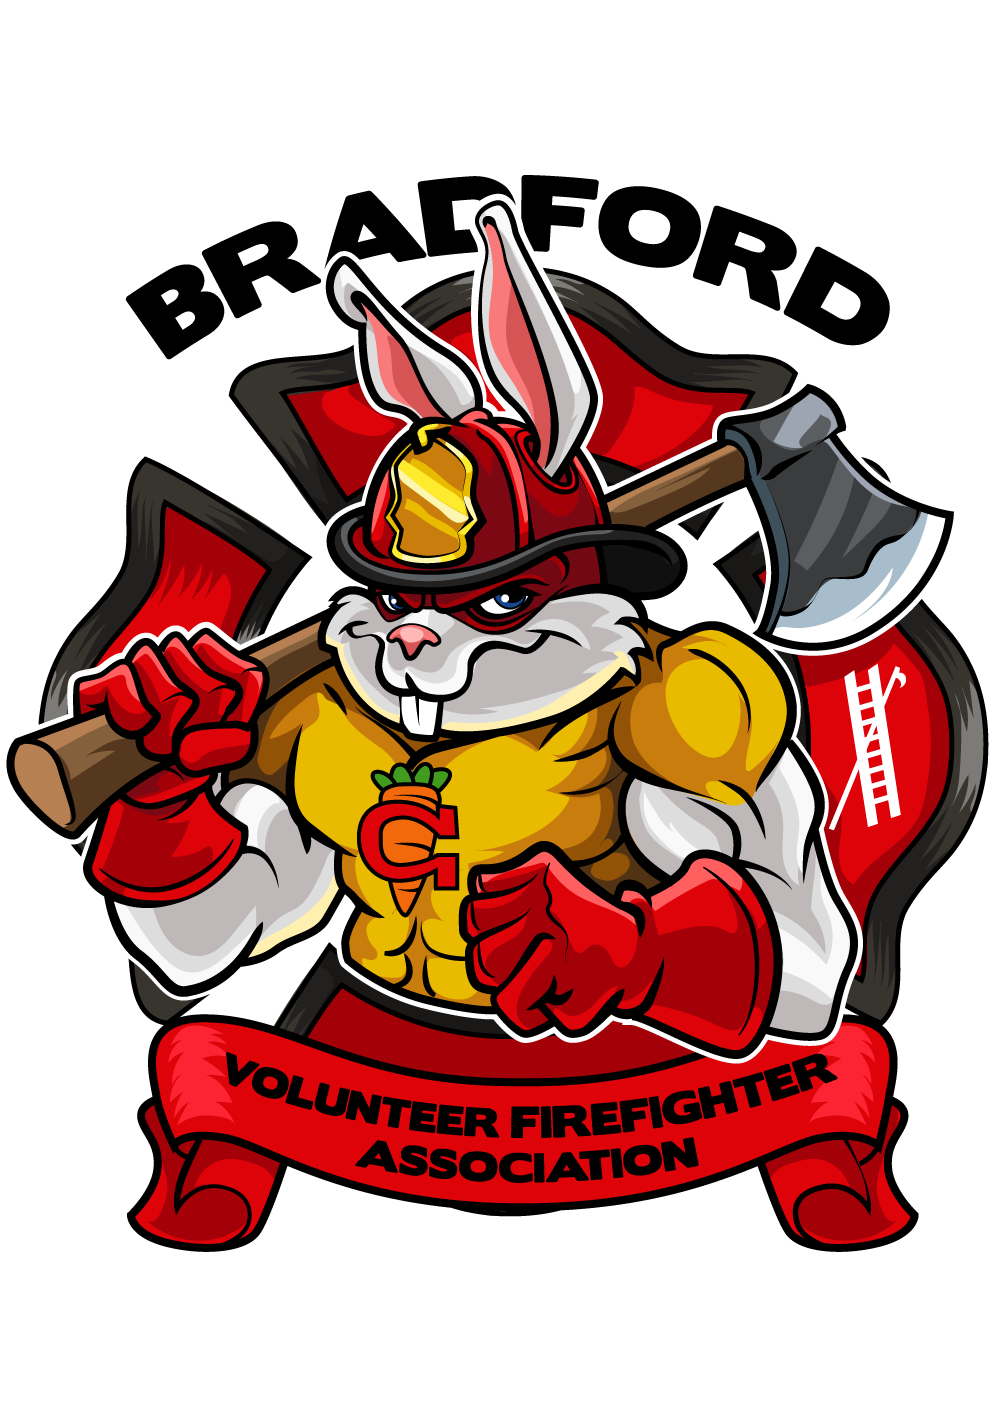 Bradford Firefighter Association